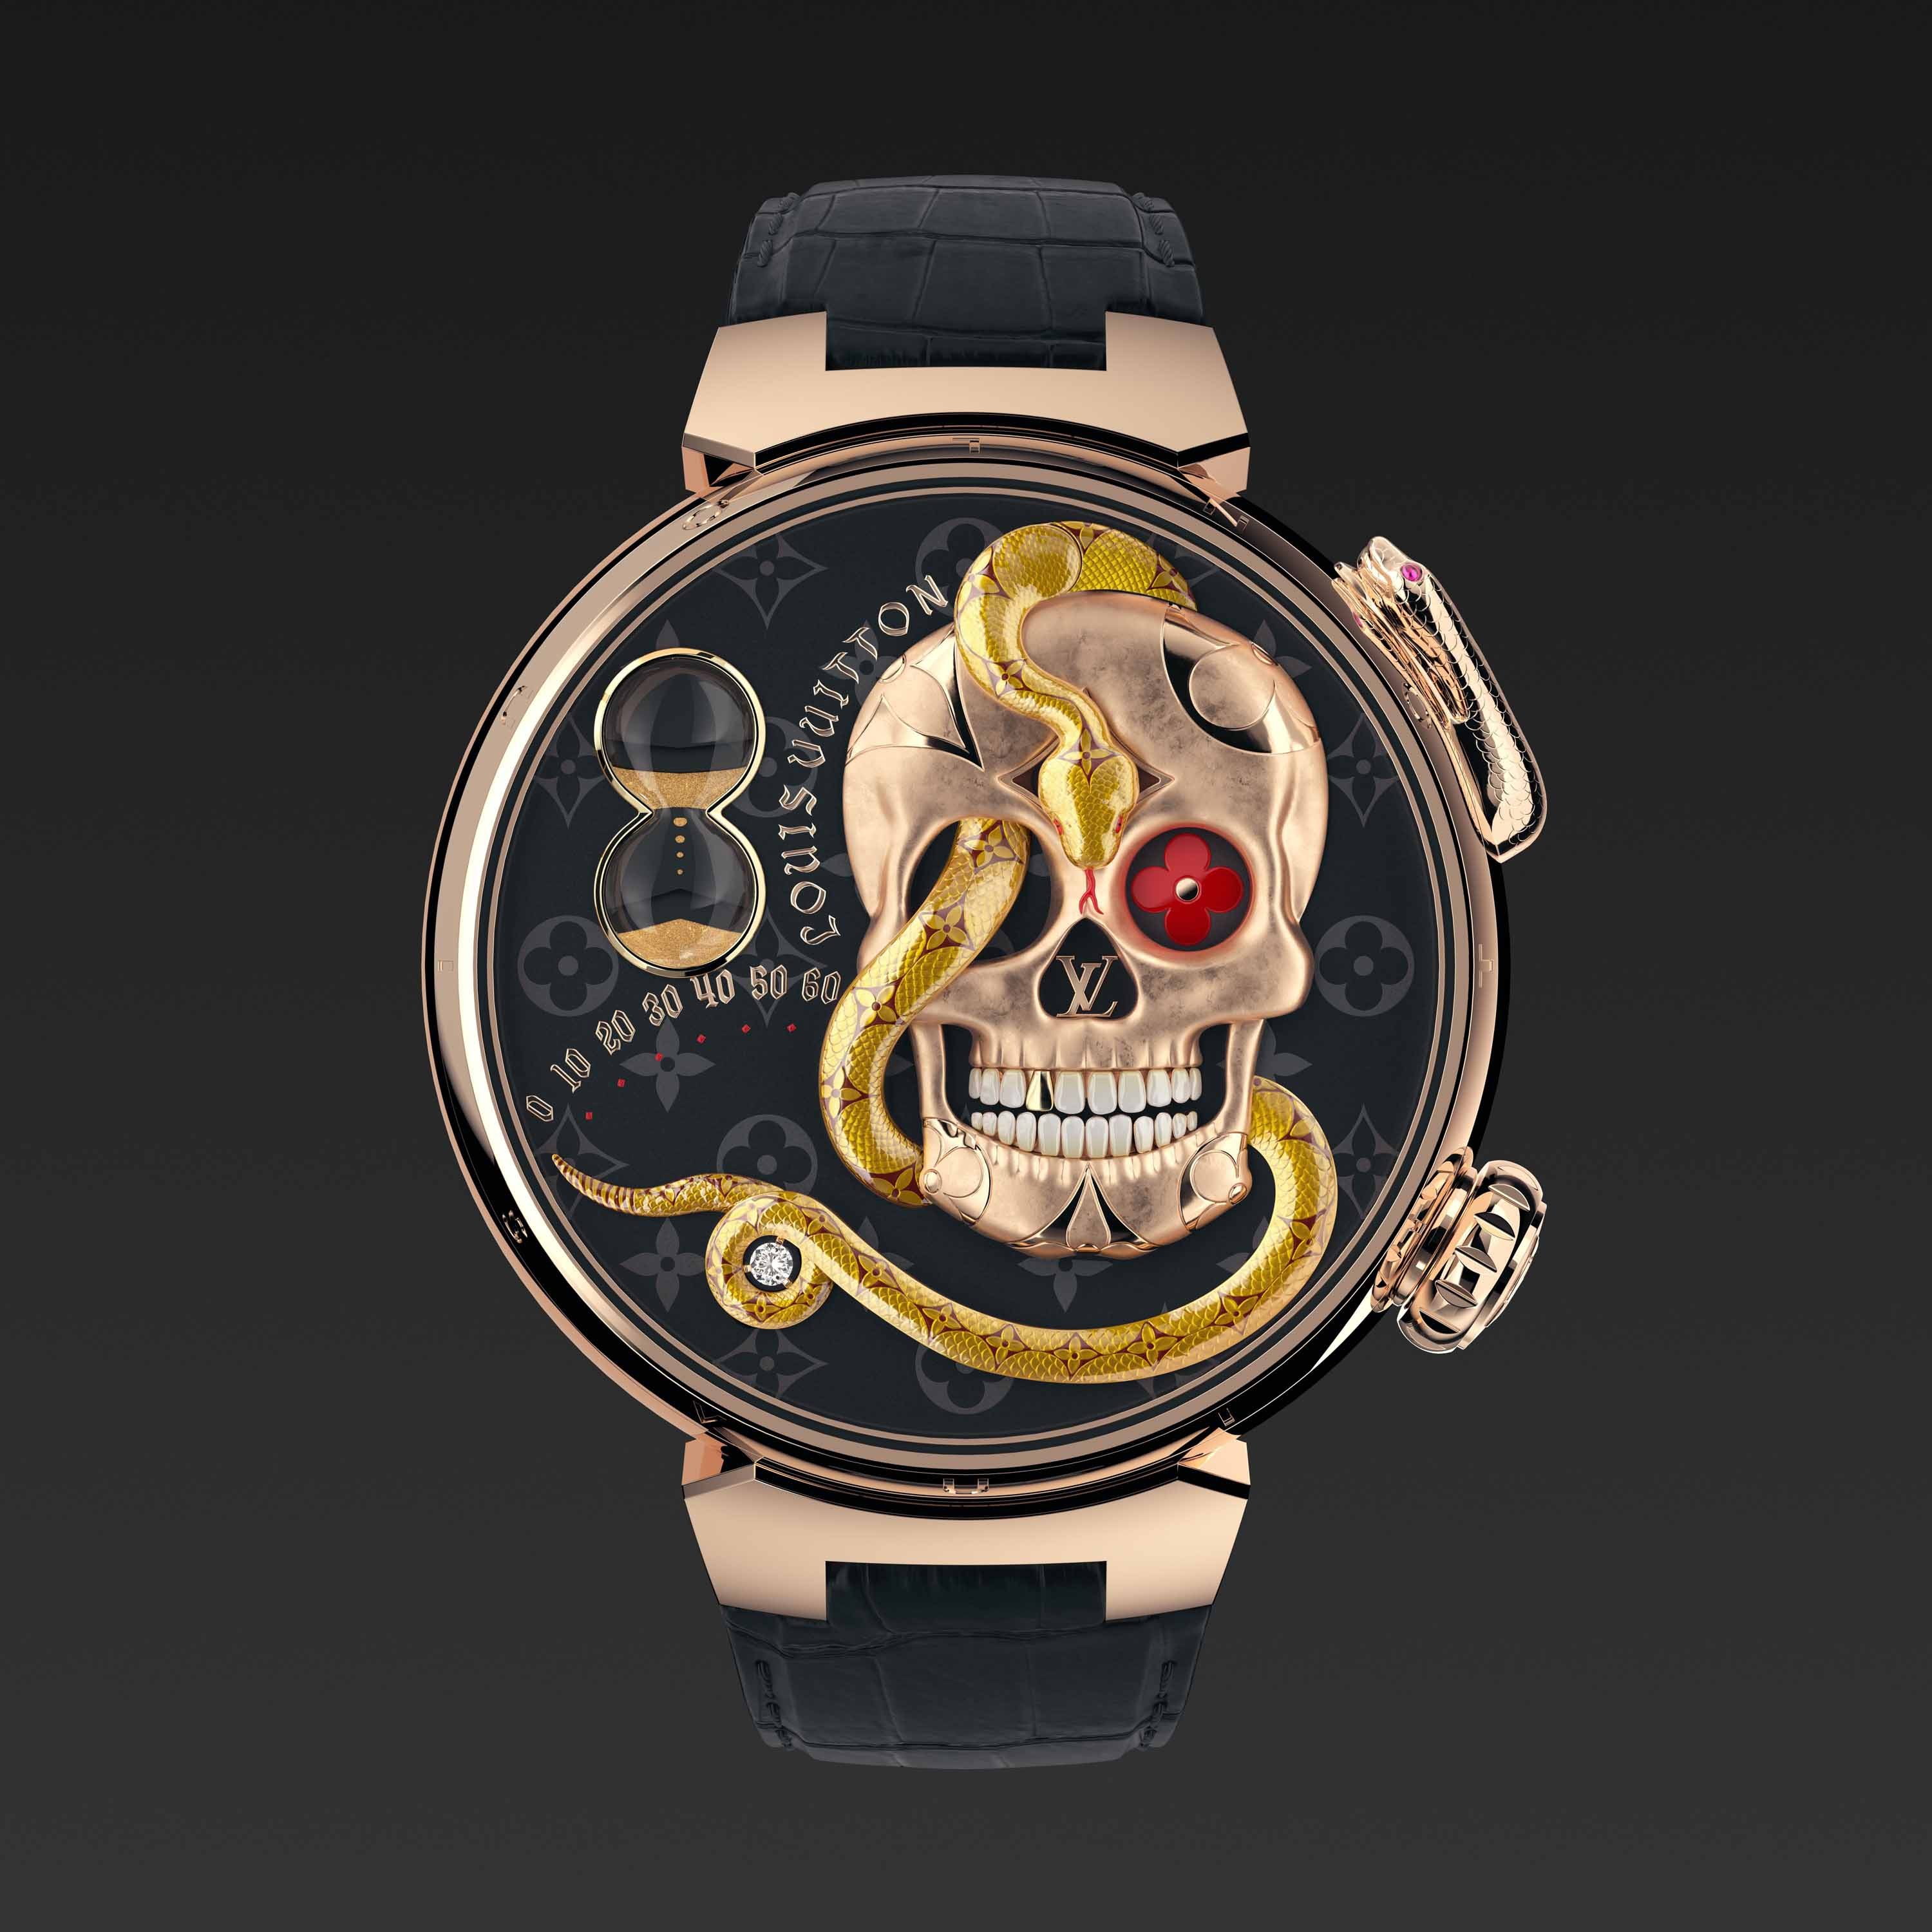 Avec la montre Tambour Carpe Diem, Louis Vuitton fait dans la magie noire